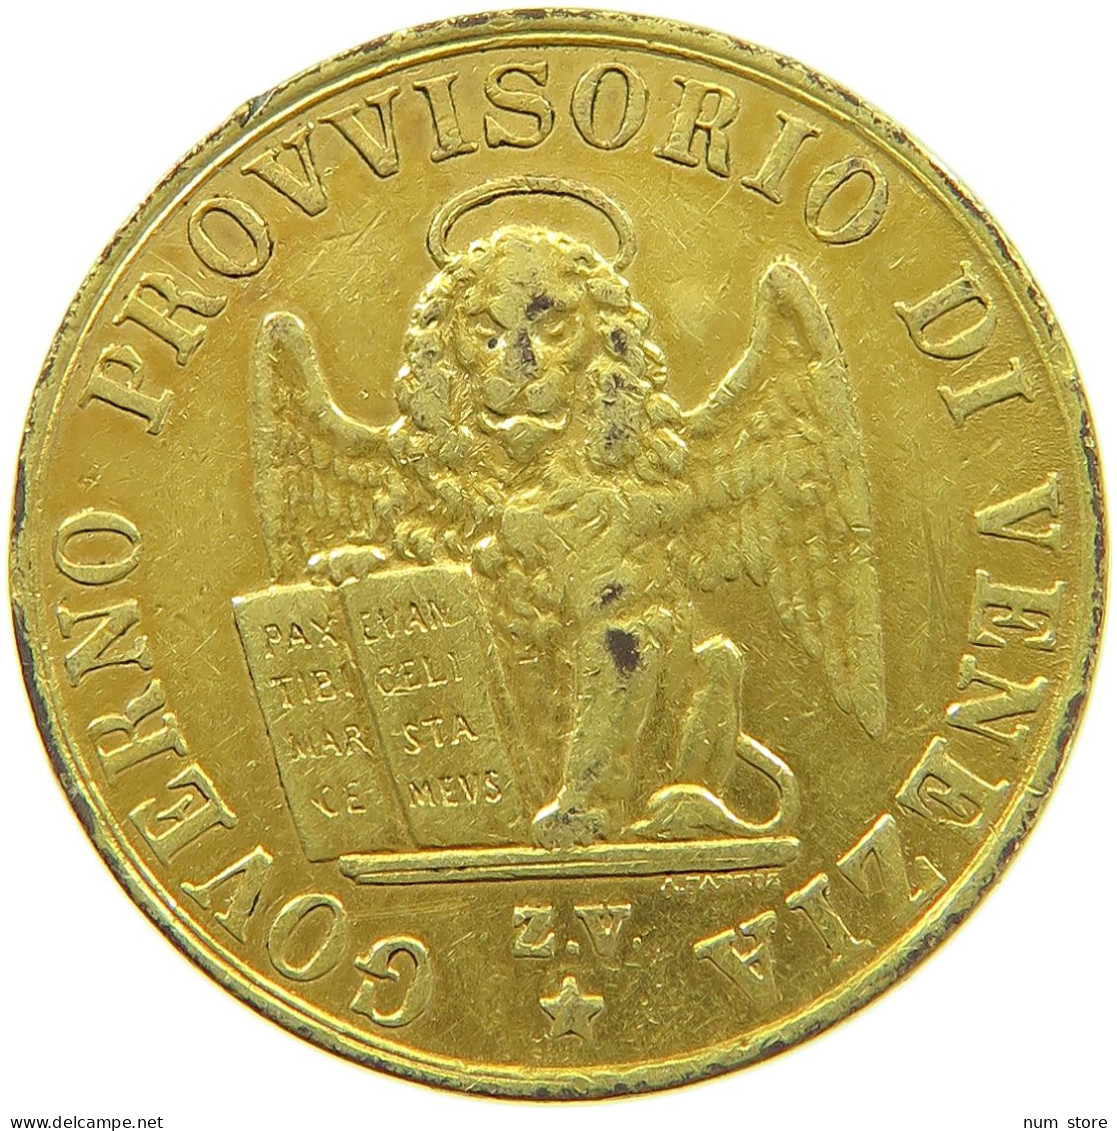 ITALY STATES VENICE VENEZIA 5 CENTESIMI 1849 GOLD PLATED #t009 0235 - Venice